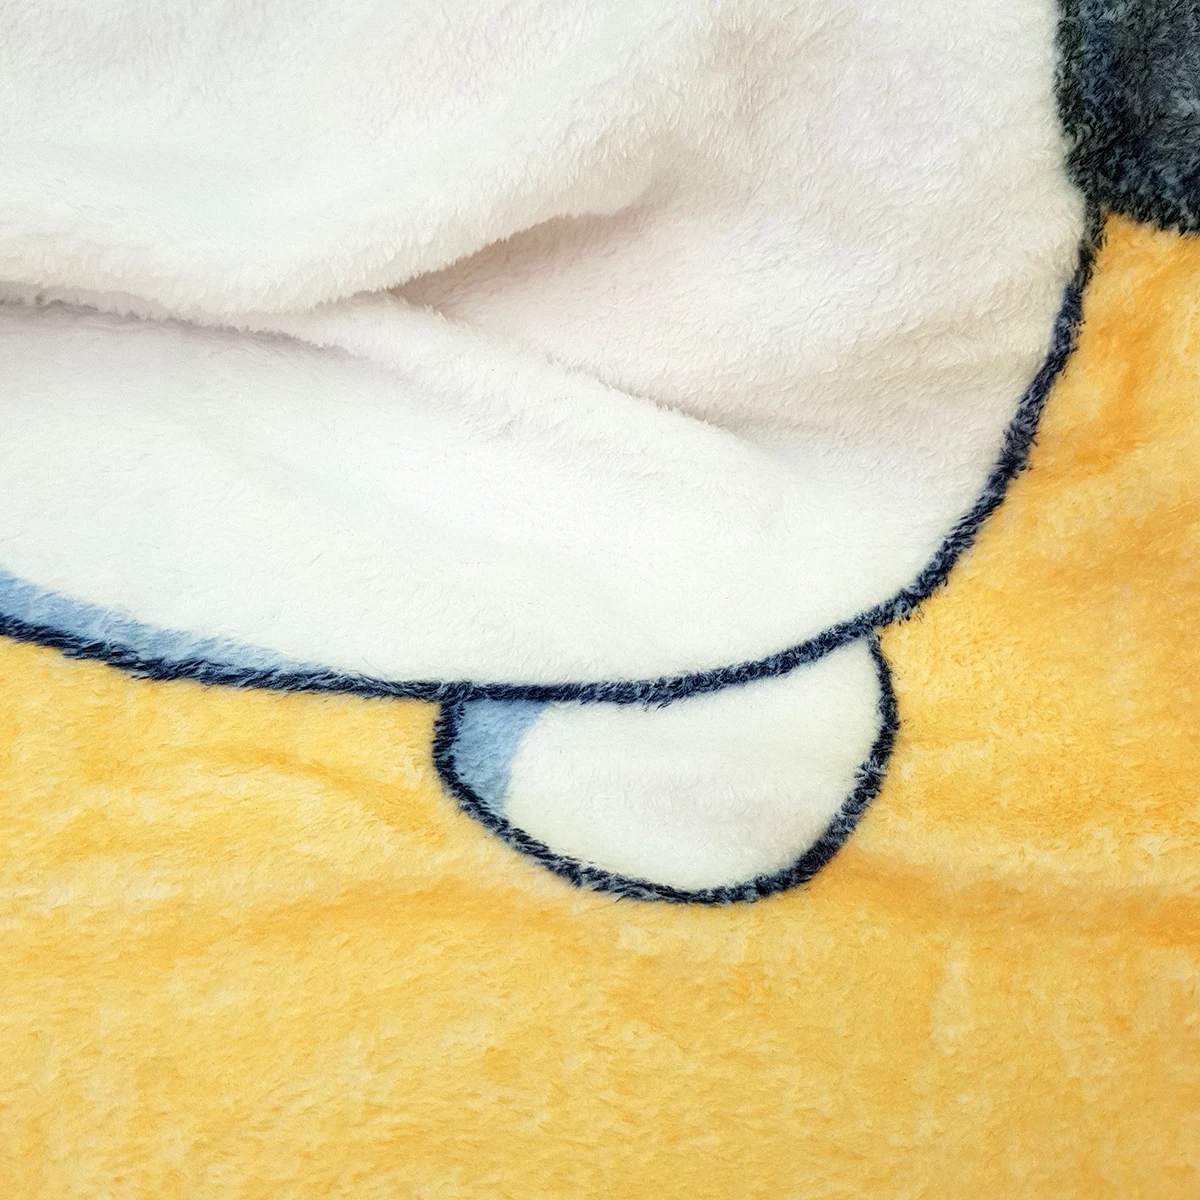 Темно-синее пледы одеяло морской яхты судно веревка используется в качестве рамки с морской звездой и якорем изображение теплое одеяло s для кровати